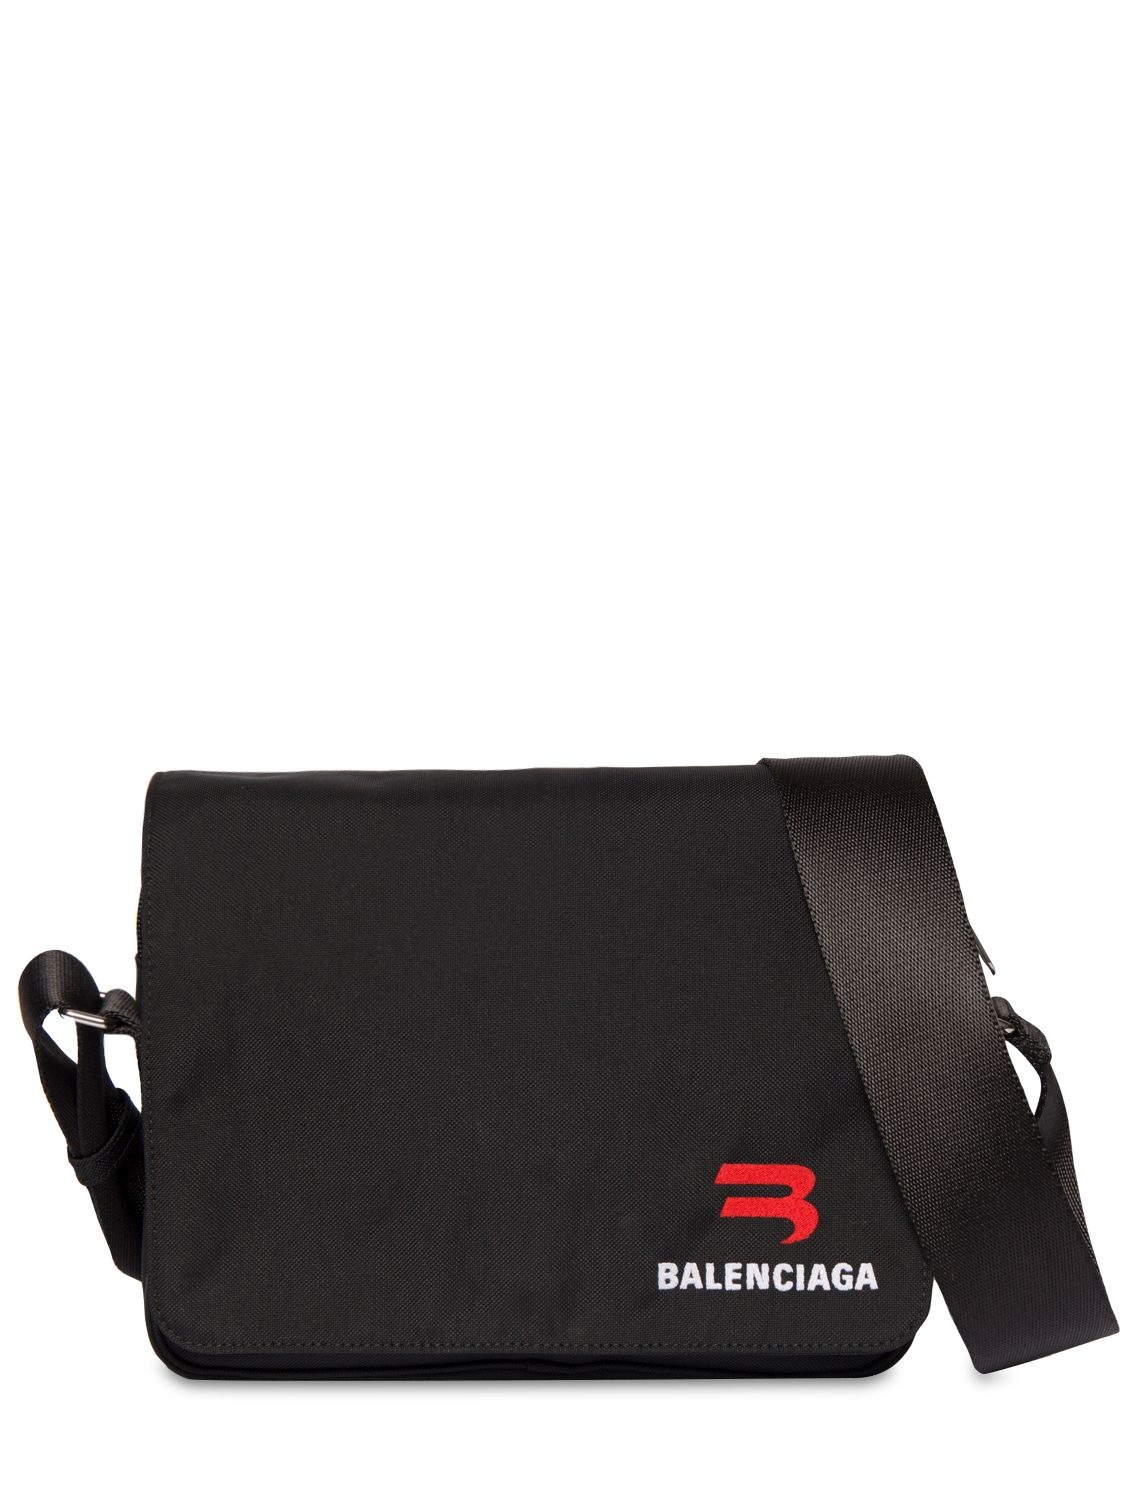 Explorer Embroidered Messenger Bag